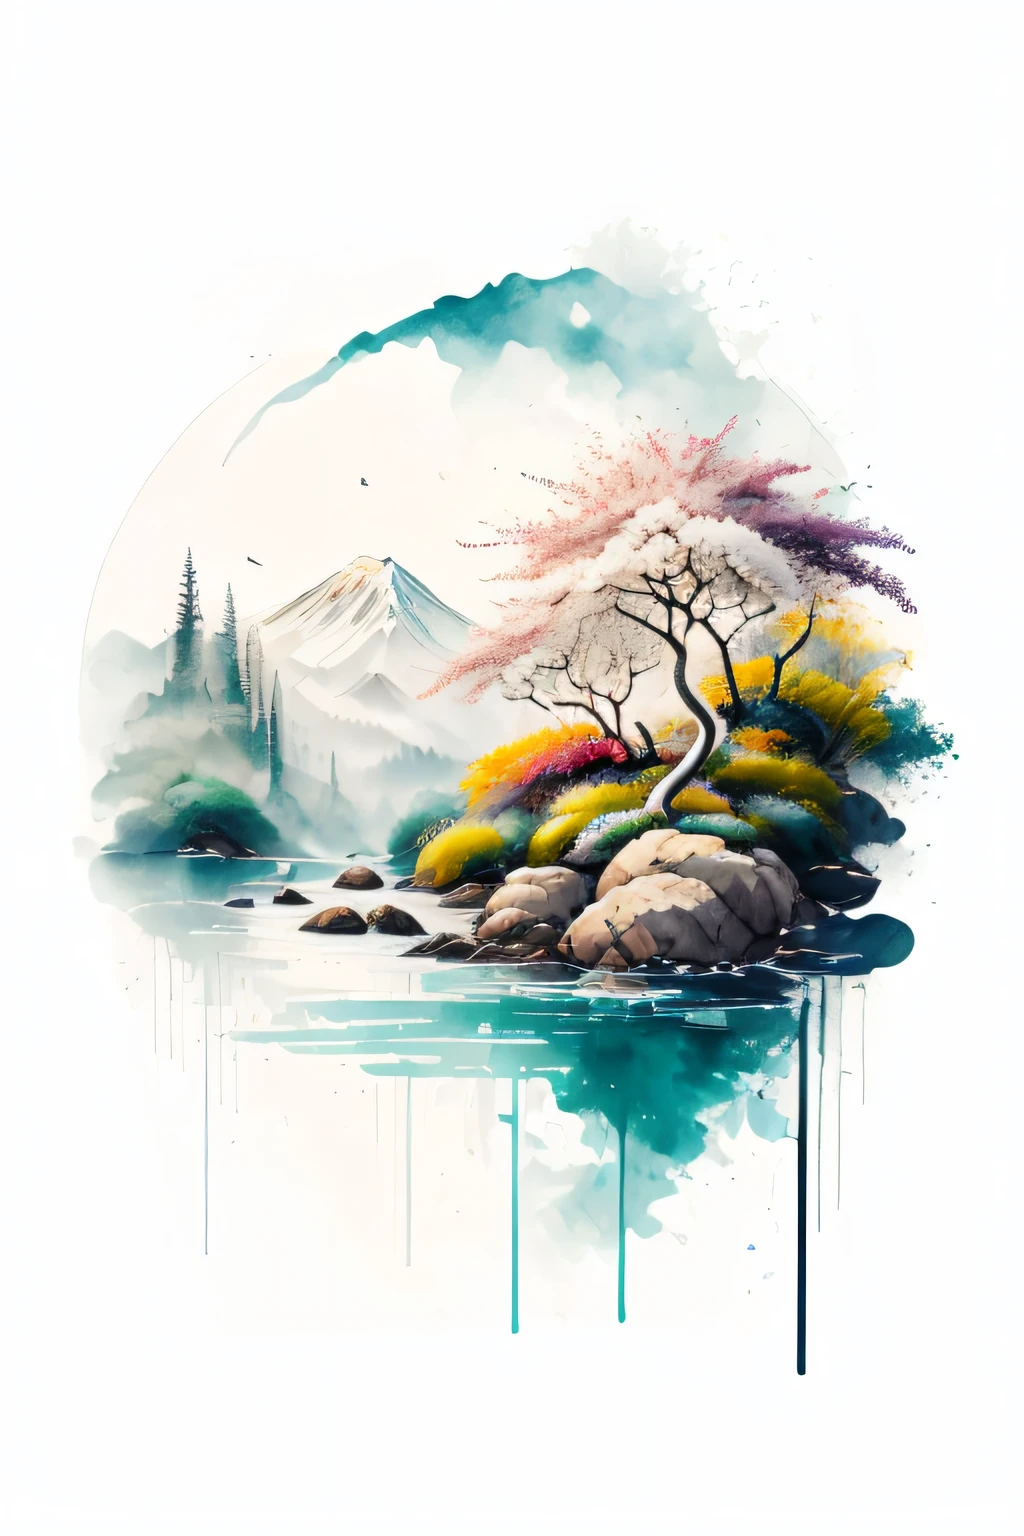 (fundo branco: 1.3), camiseta, paisagem, Rio, água, árvores, pássaros, pintar